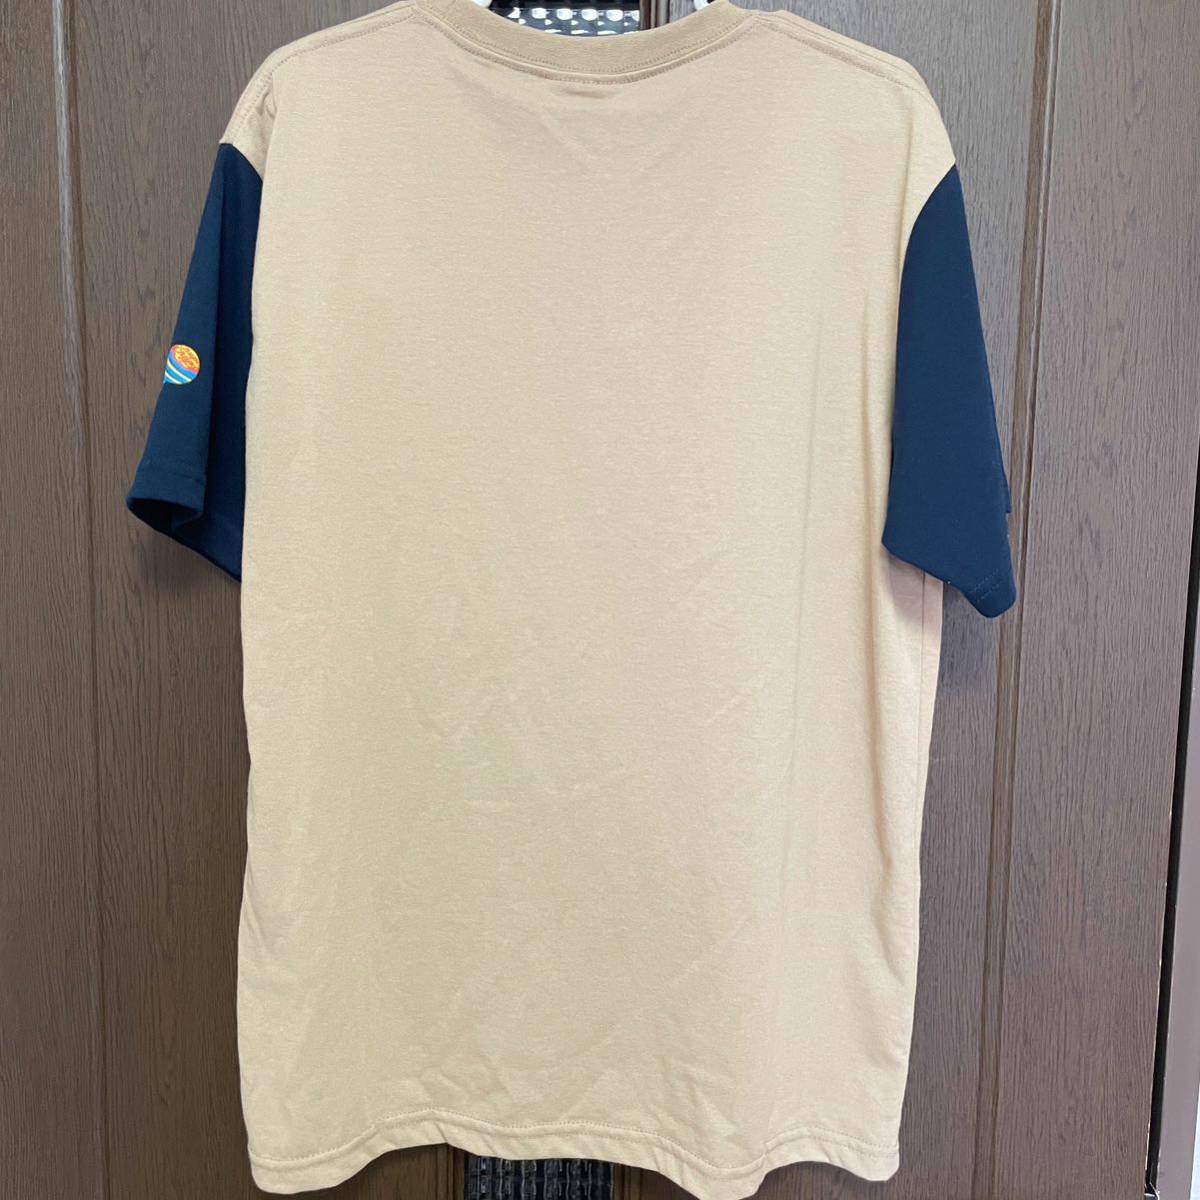 チュッパチャプス Tシャツ 半袖Tシャツ レディース メンズ ユニセックス 服 可愛い カジュアル ベージュ ネイビー 紺 大きいサイズ 大きめ_画像2